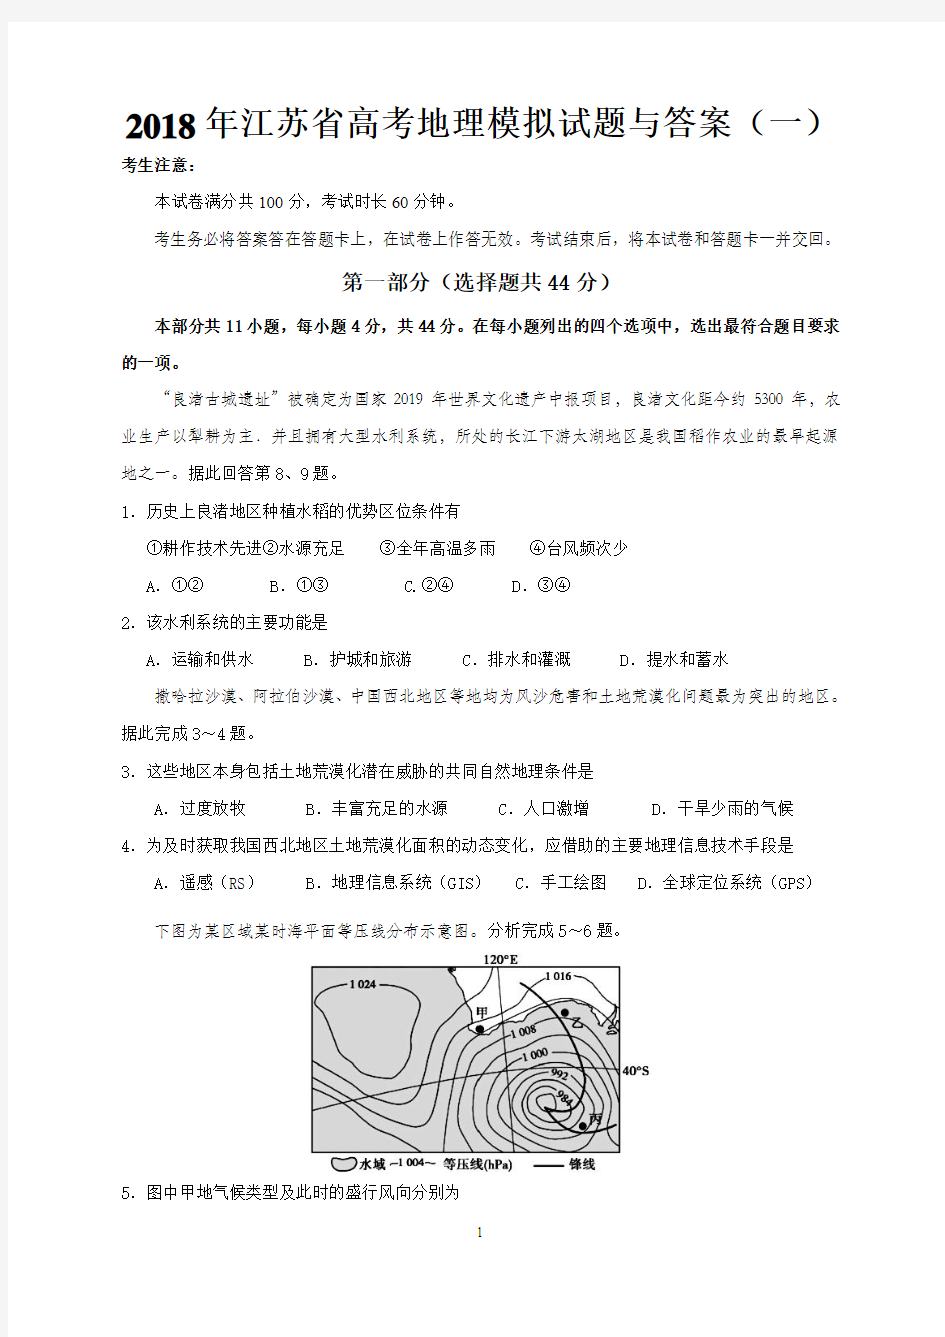 2019年江苏省高考地理模拟试题与答案(一)